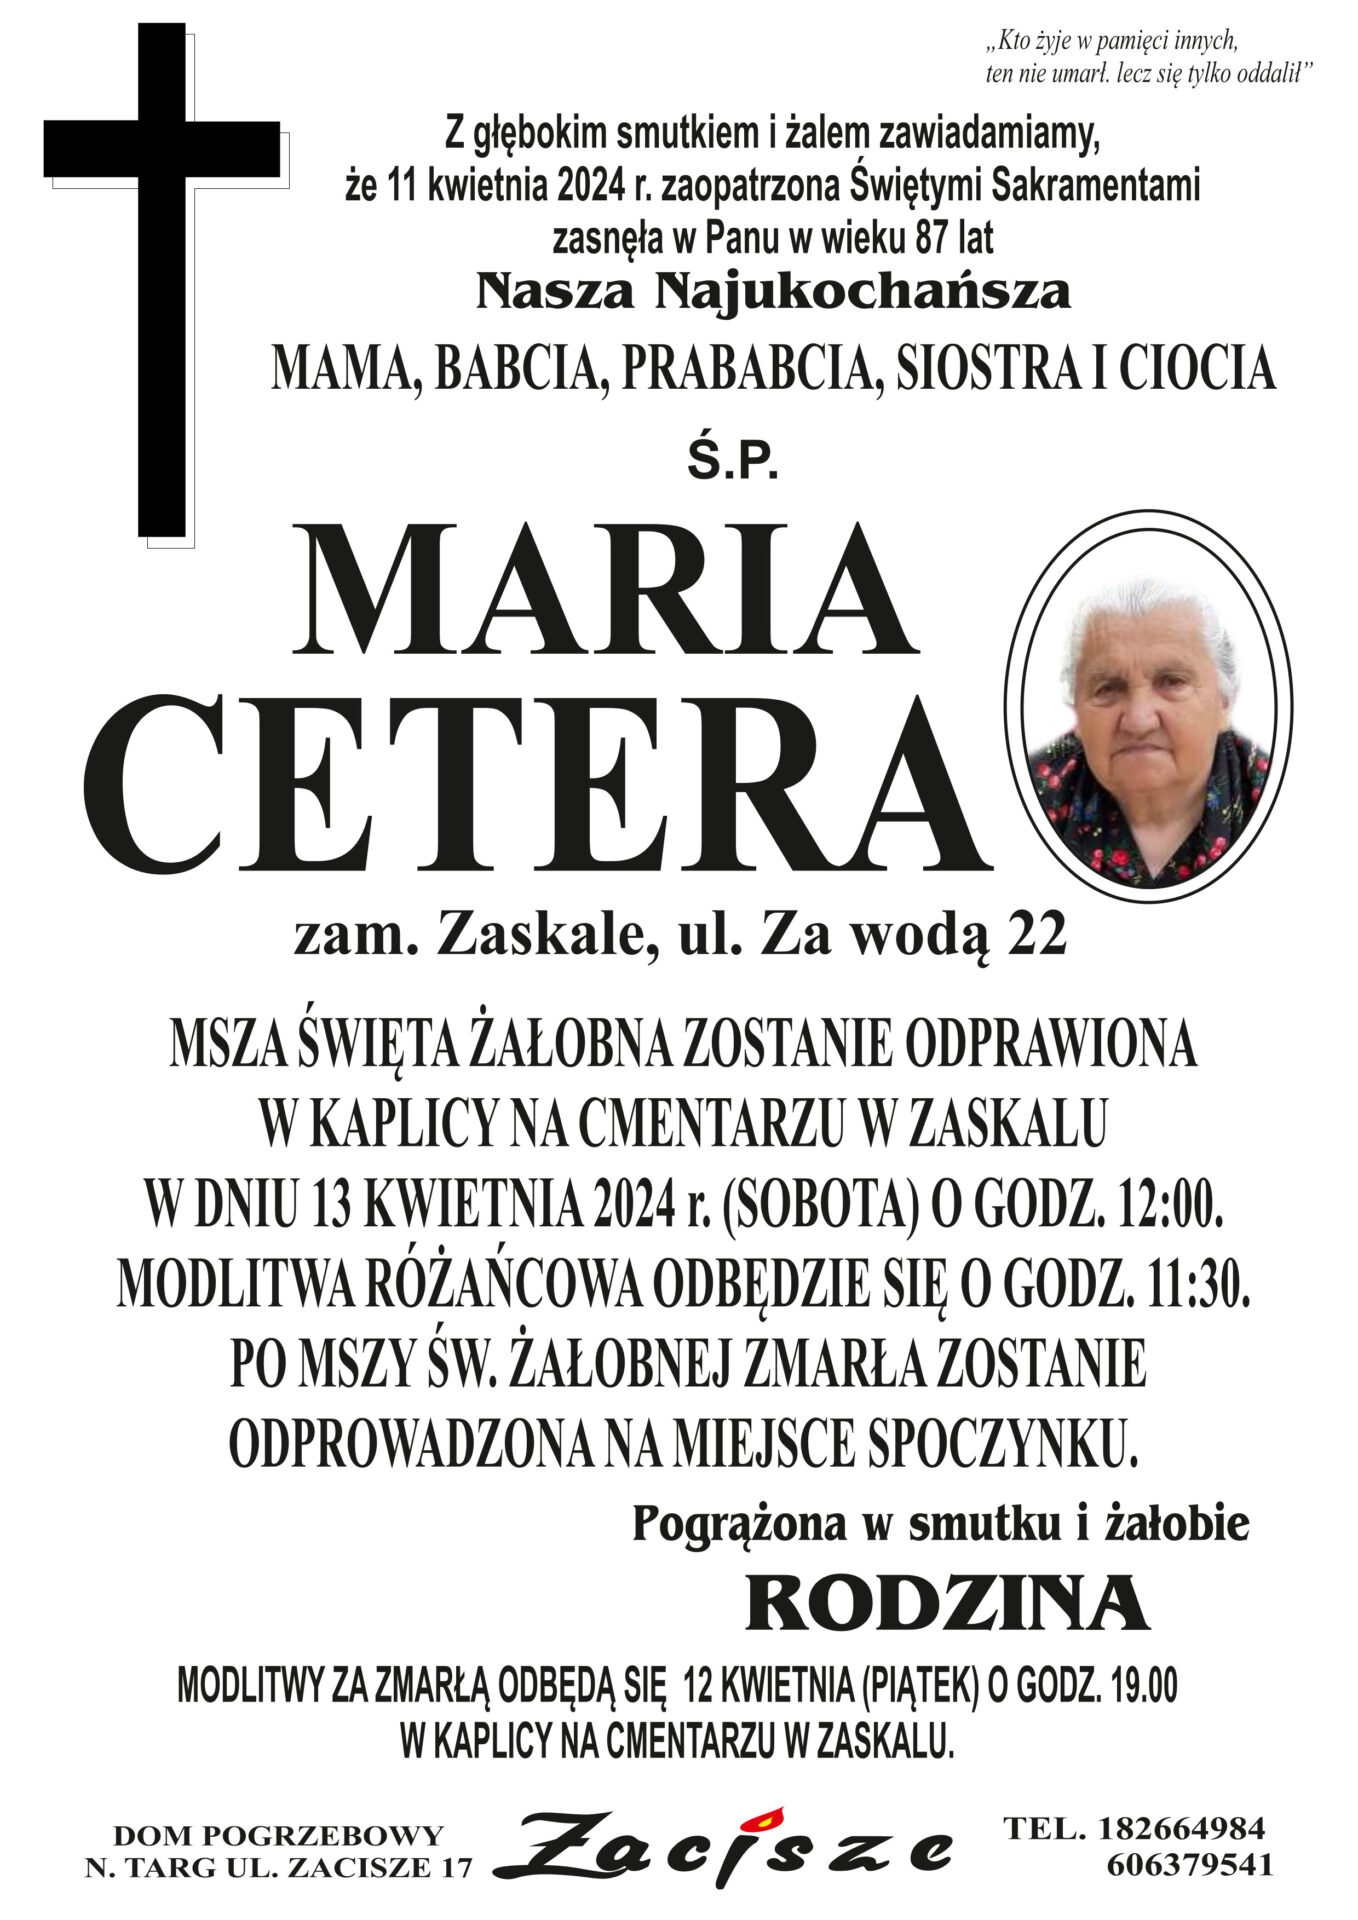 Maria Cetera